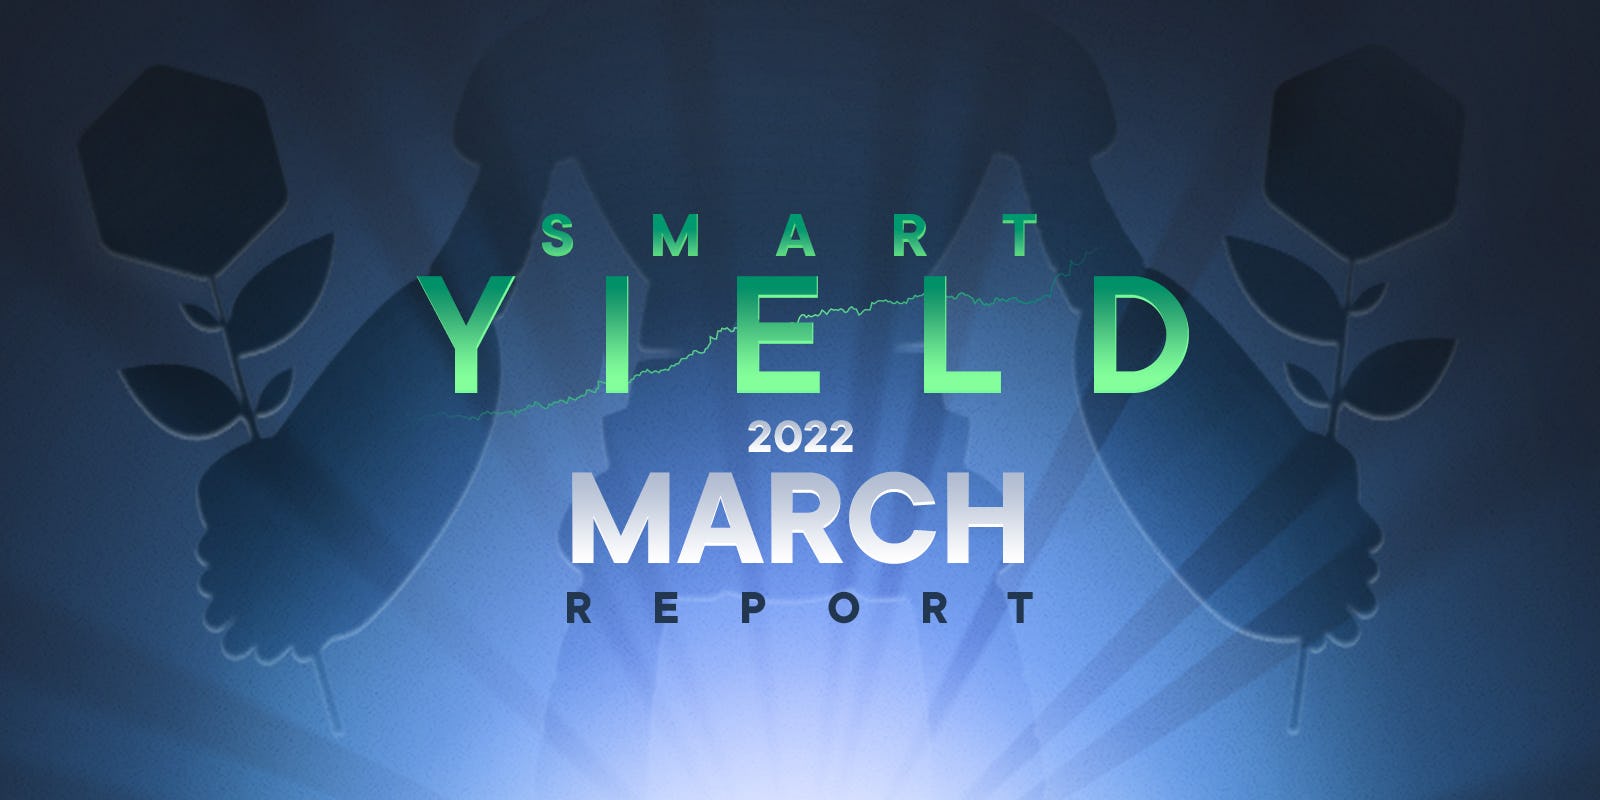 Le rapport Smart Yield : Mars 2022